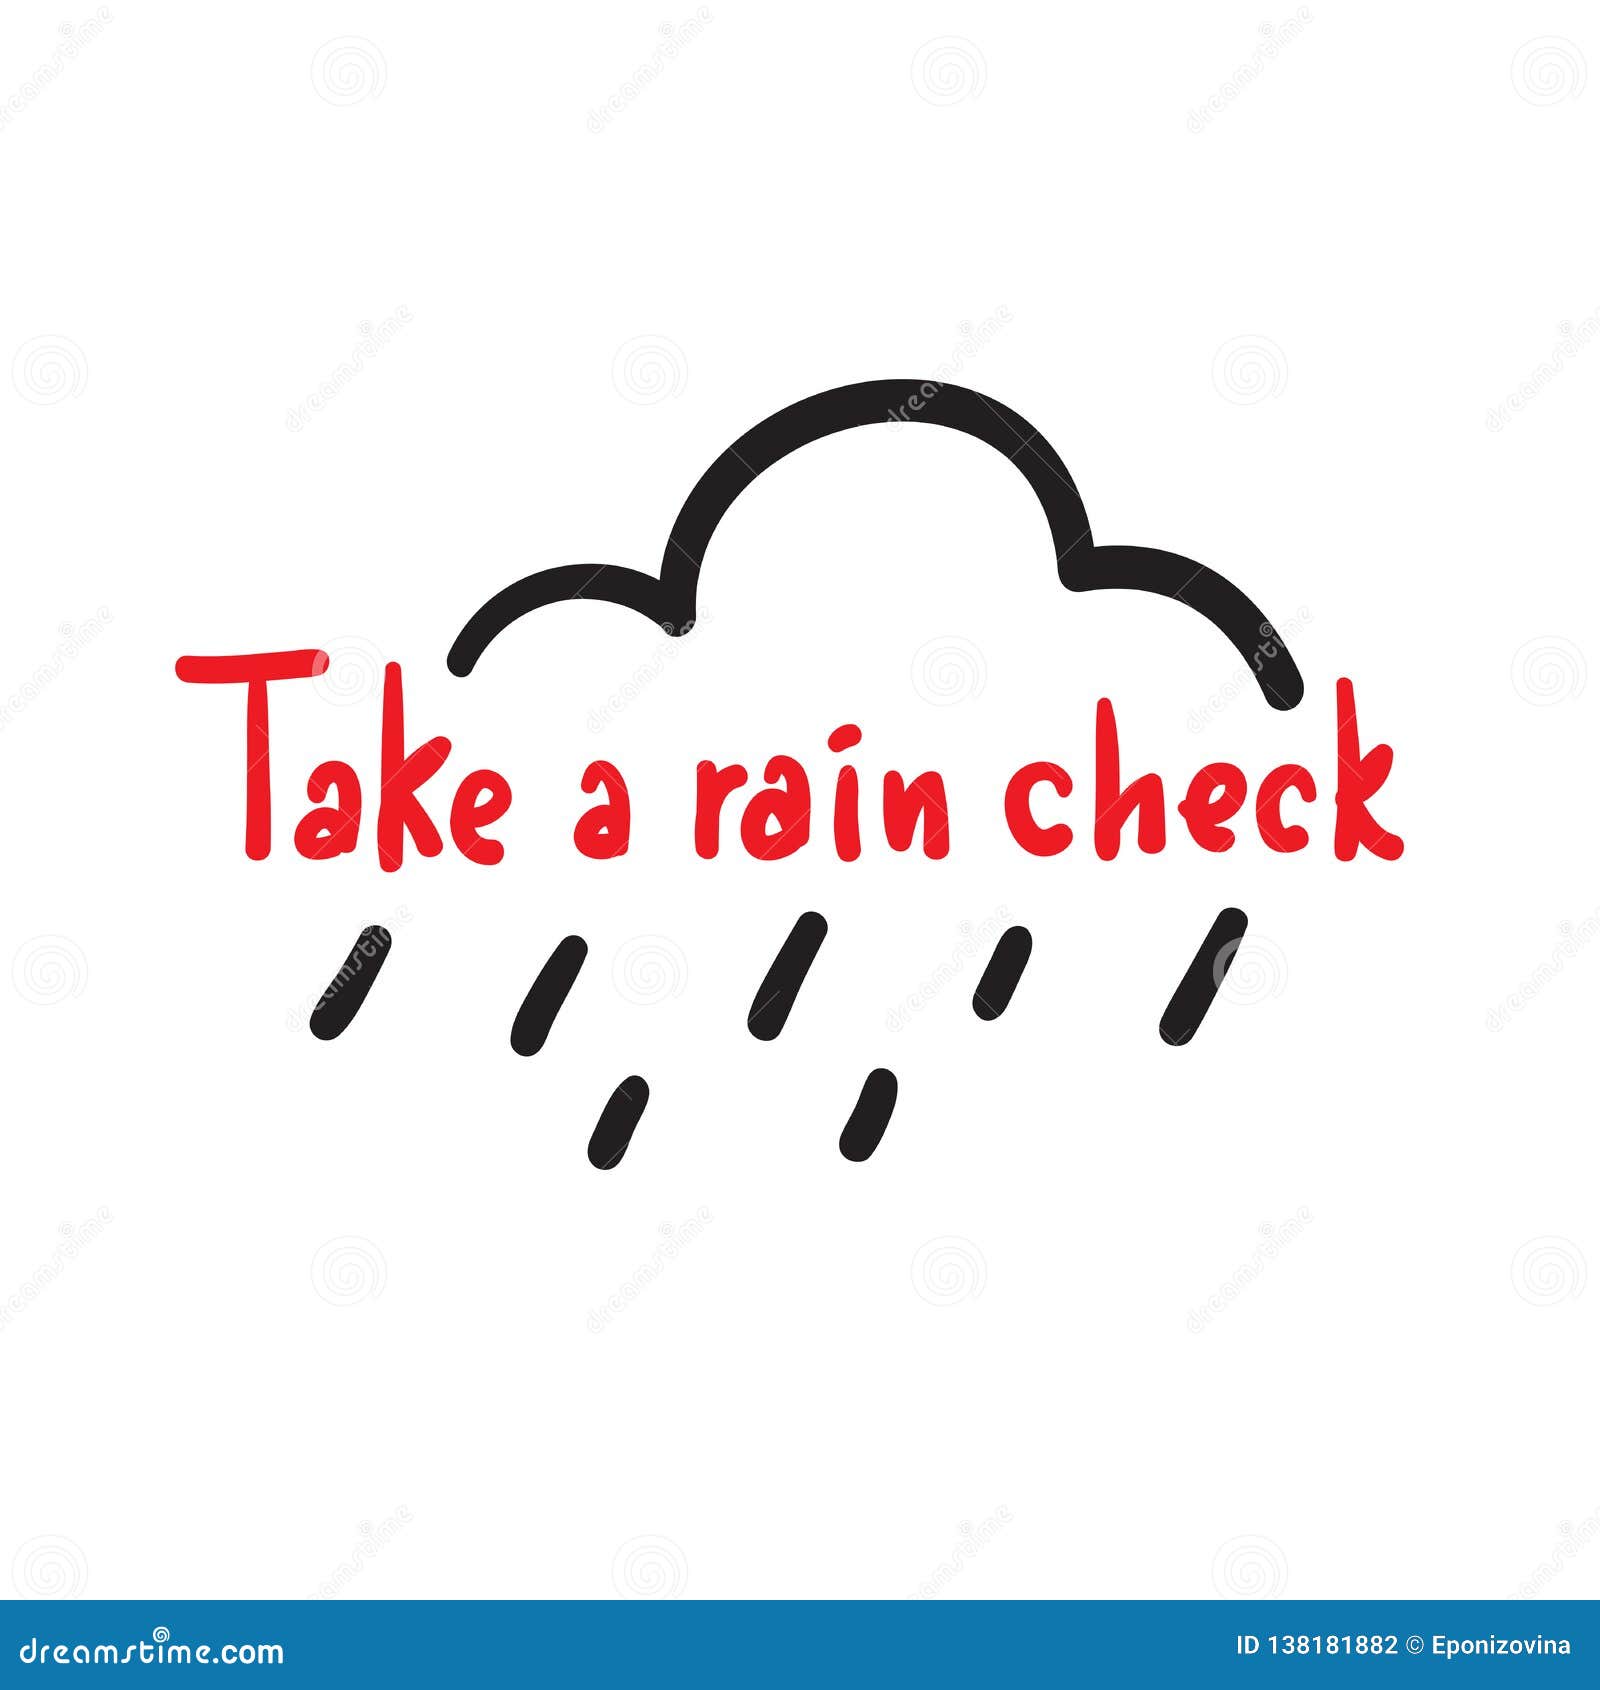 Take a rain check. Rain check. Rain check идиома. Rain check перевод. Take a Rain check on.